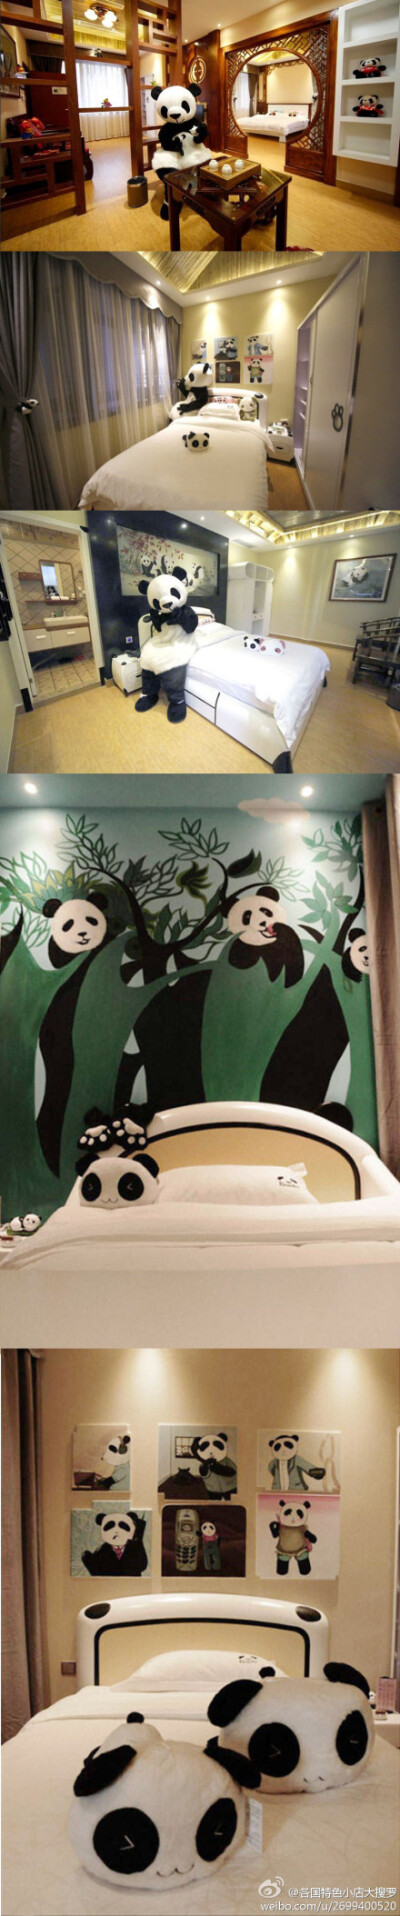 中国四川省峨眉山一家以大熊猫文化为主题的庭院式酒店将于2013年5月